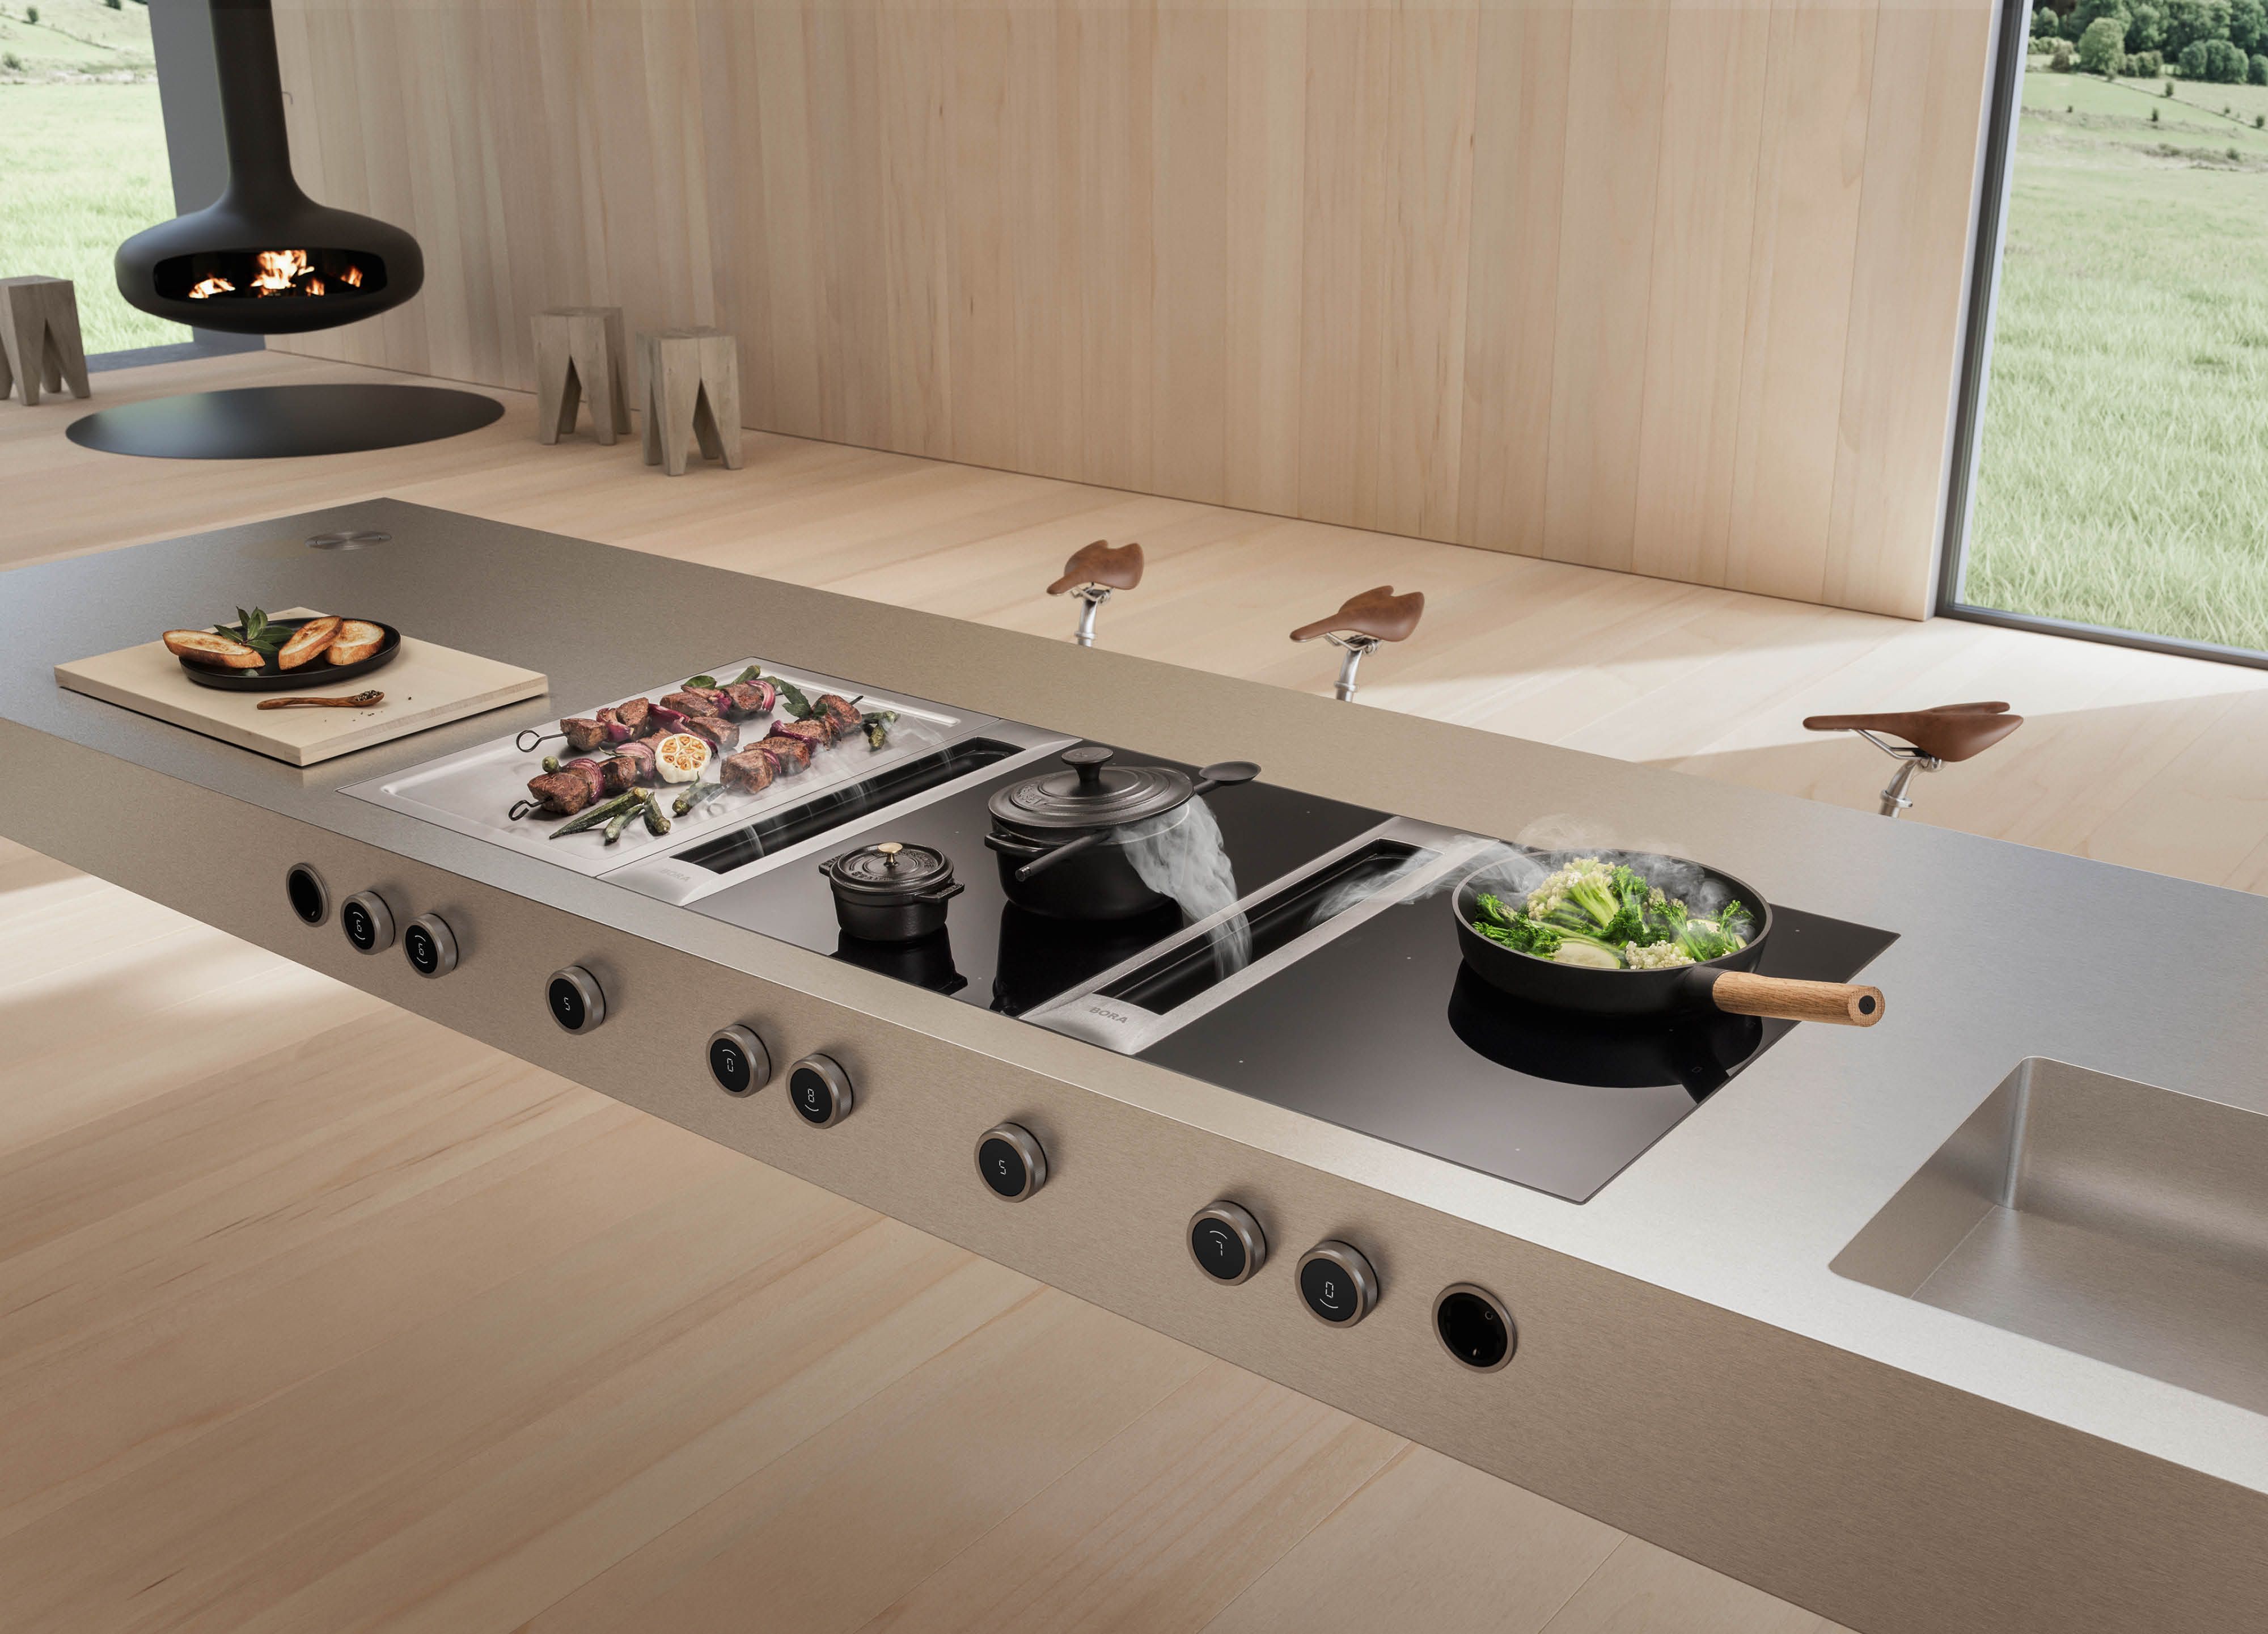 BORA Professional 3.0 Kochfeldabzugssystem in luxuriöser Küche mit Holzboden und Kaminofen im Hintergrund.